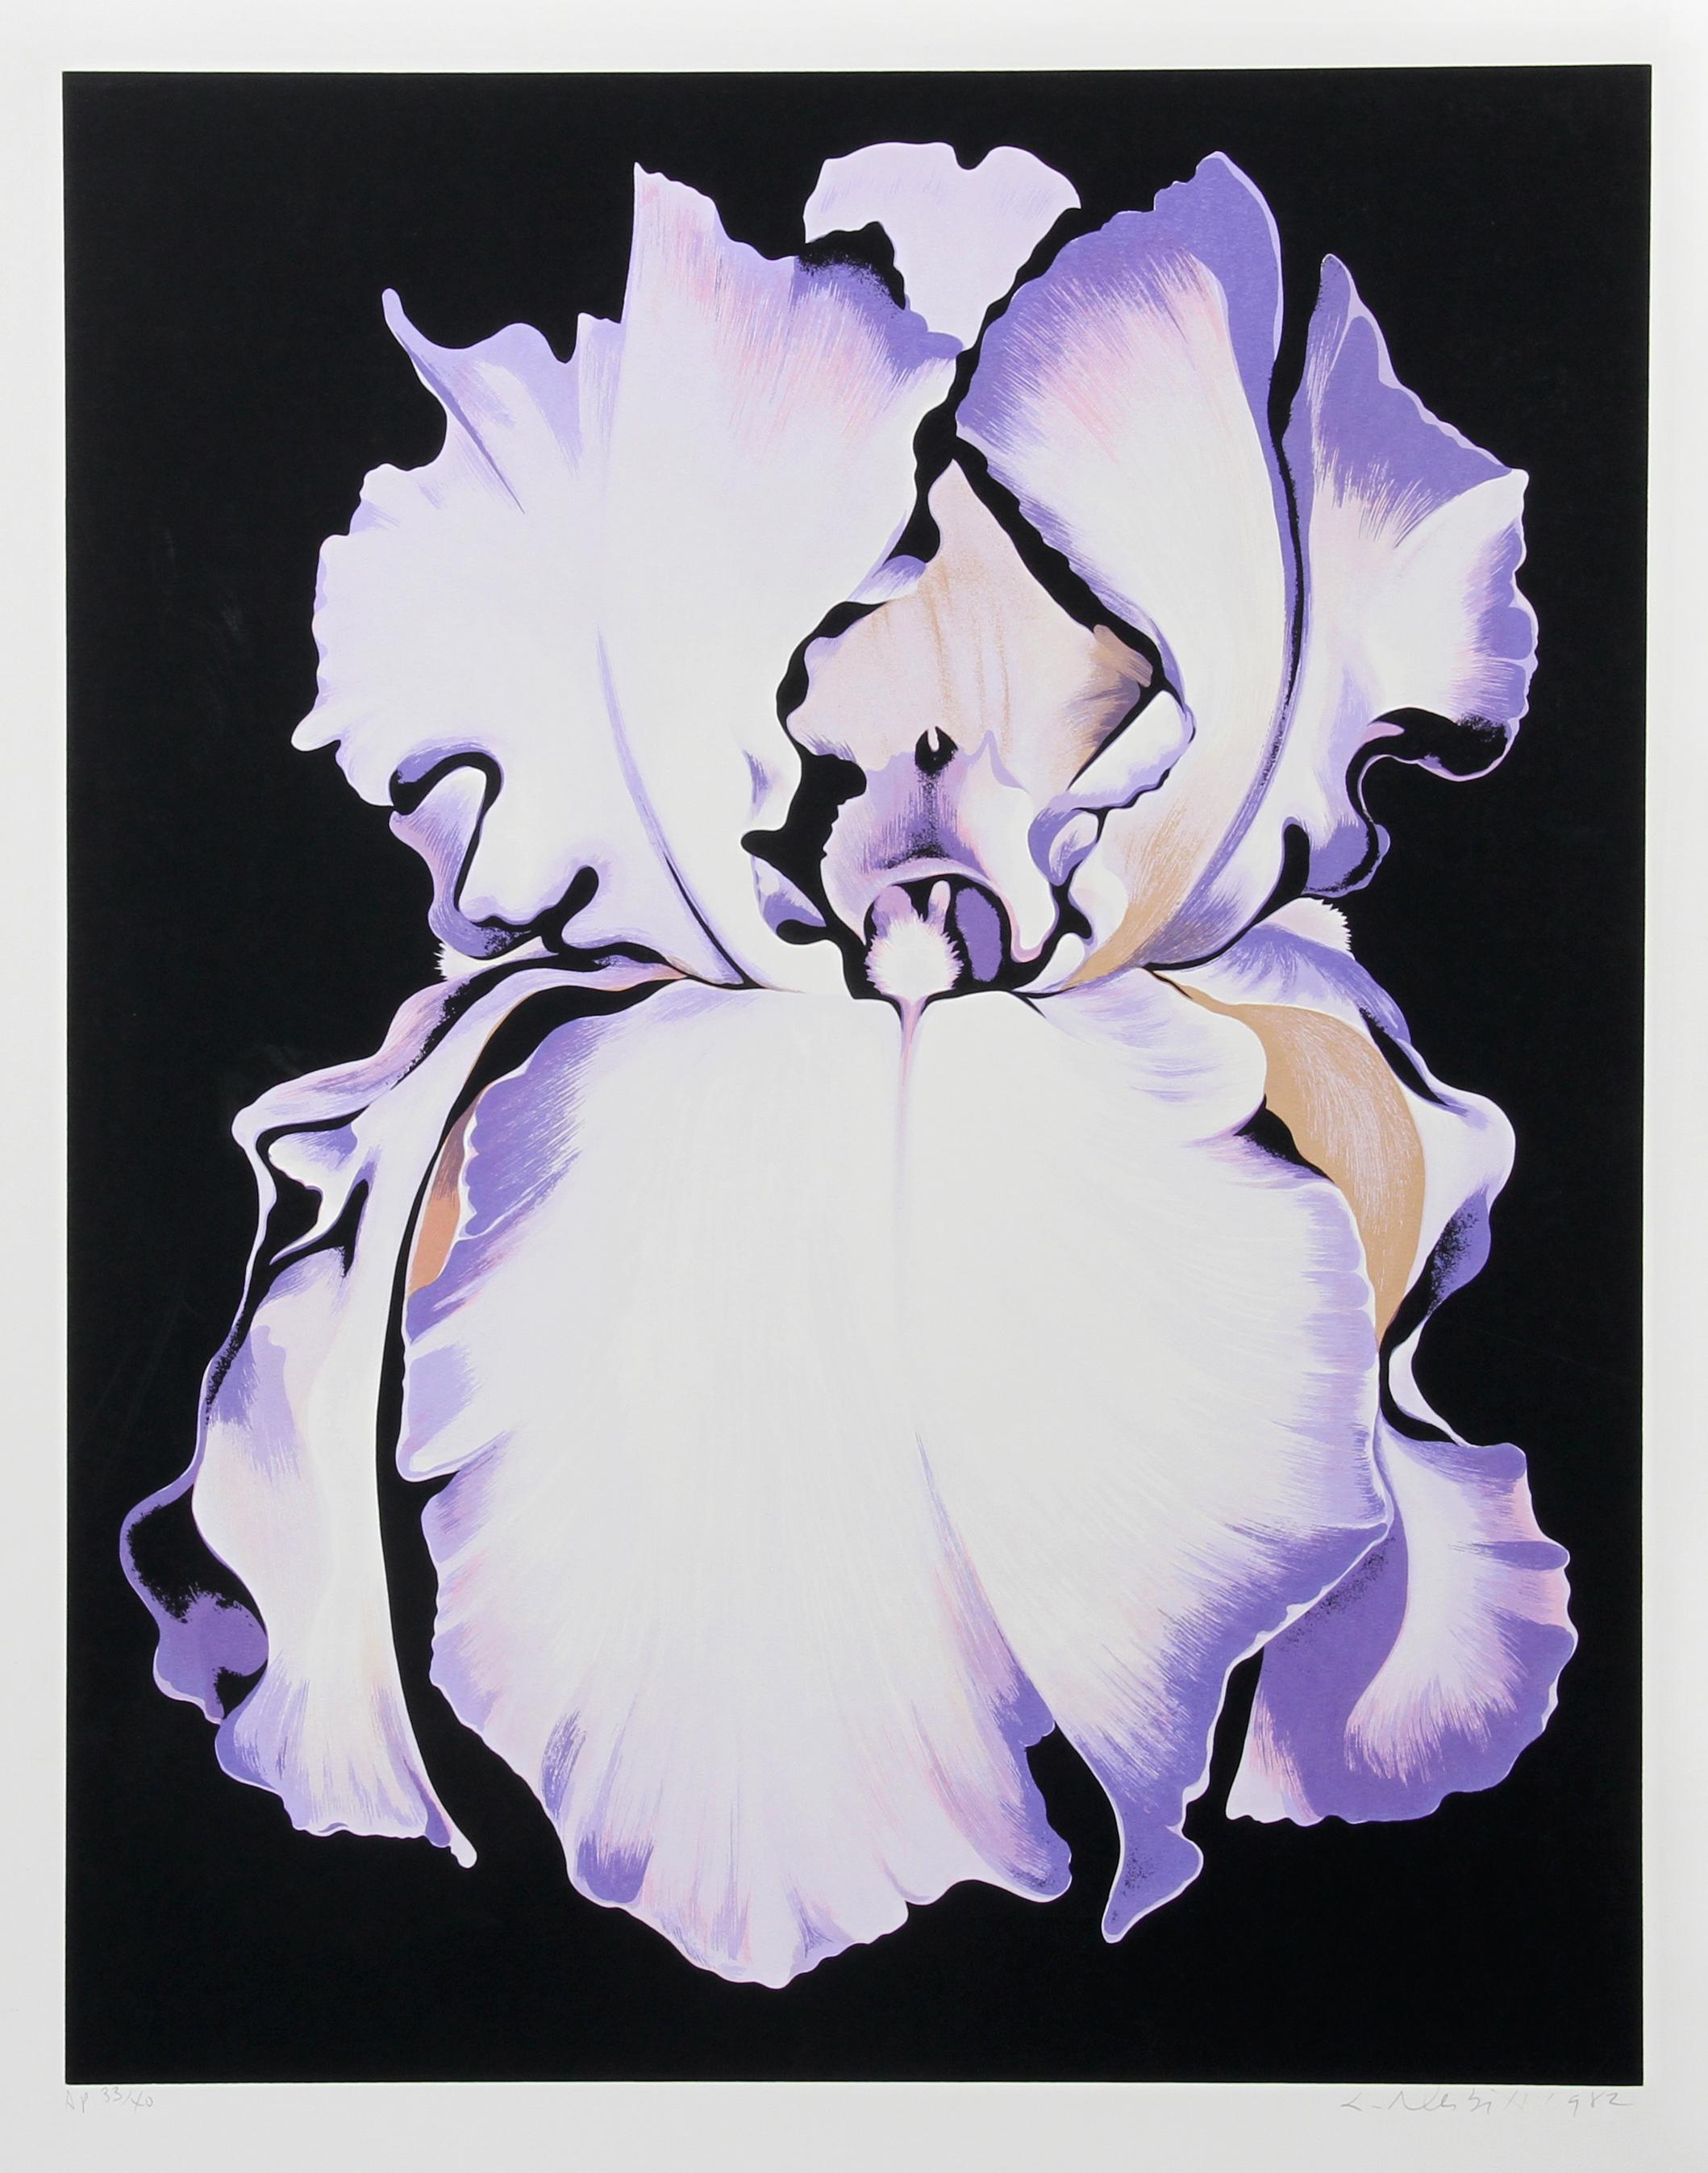 Künstler: Lowell Blair Nesbitt, Amerikaner (1933 - 1993)
Titel: Weiße Iris auf Schwarz
Jahr: 1982
Medium: Siebdruck, signiert und nummeriert mit Bleistift
Auflage: AP 40
Bildgröße: 31,5 x 25 Zoll
Größe: 38 x 29 Zoll (96,52 x 73,66 cm)